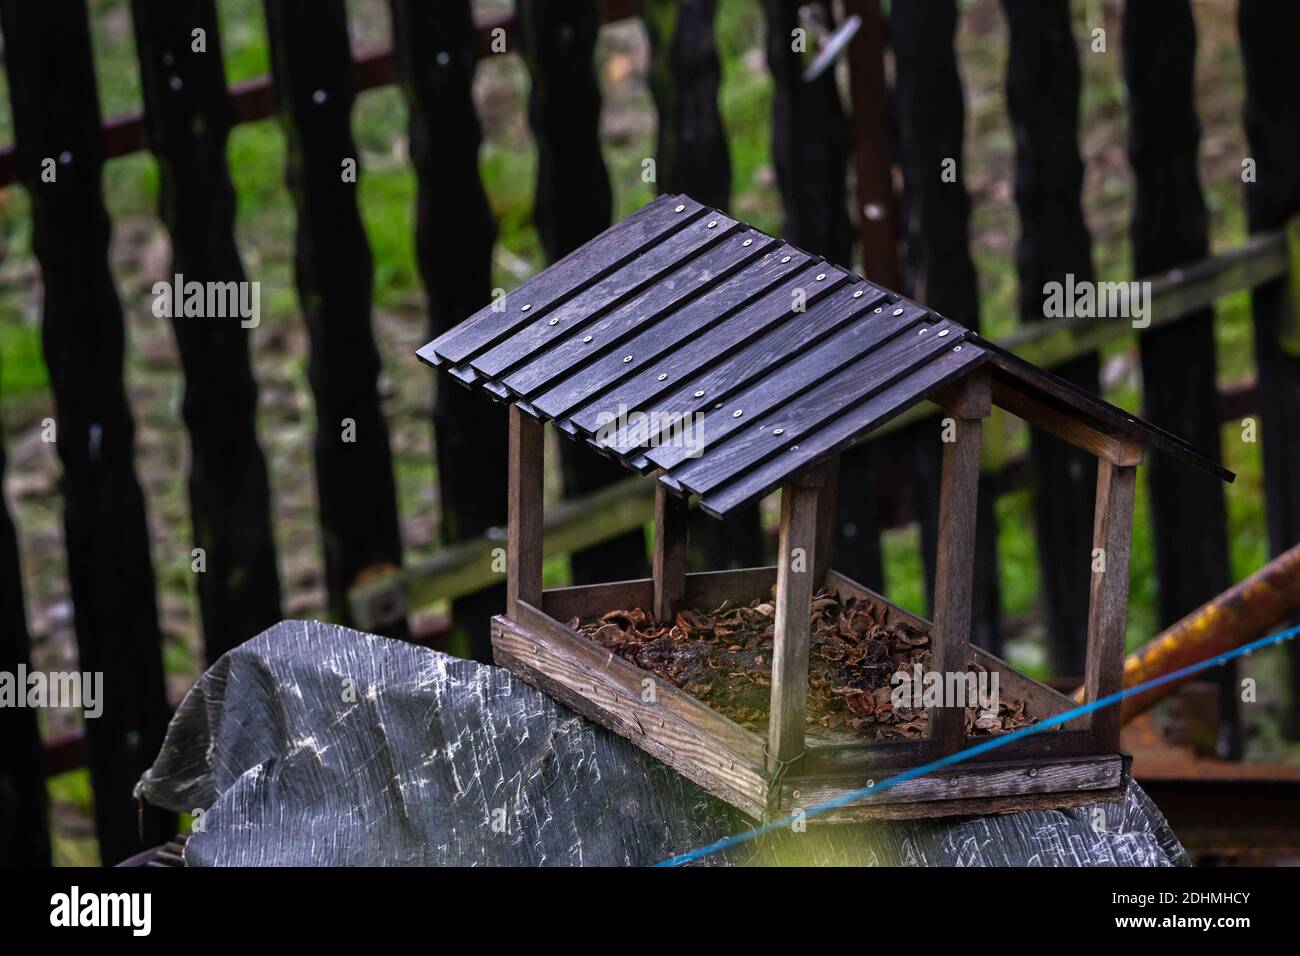 Vogelhaus mit schwarzen Fliesen auf einer grauen Folie Mit einem schwarzen  Zaun dahinter Stockfotografie - Alamy